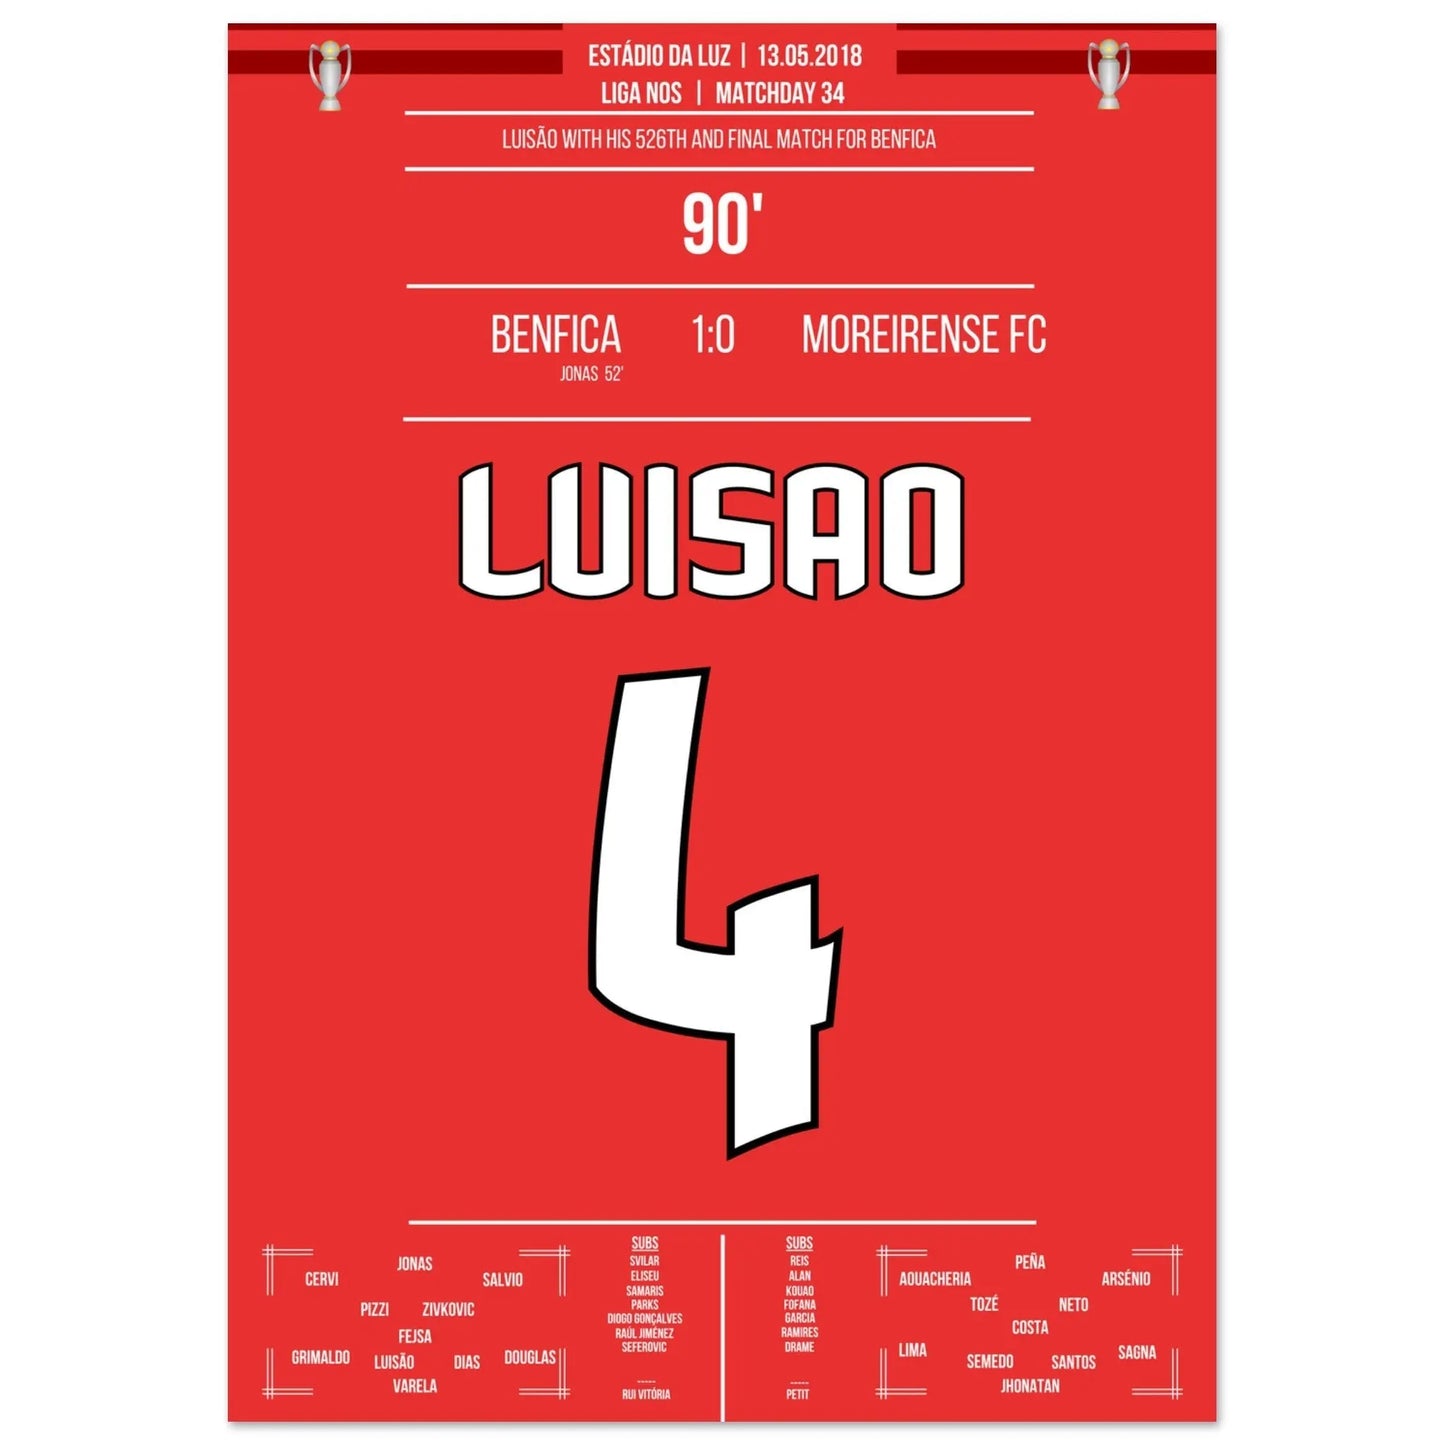 Luisao's letztes Spiel für Benfica in 2018